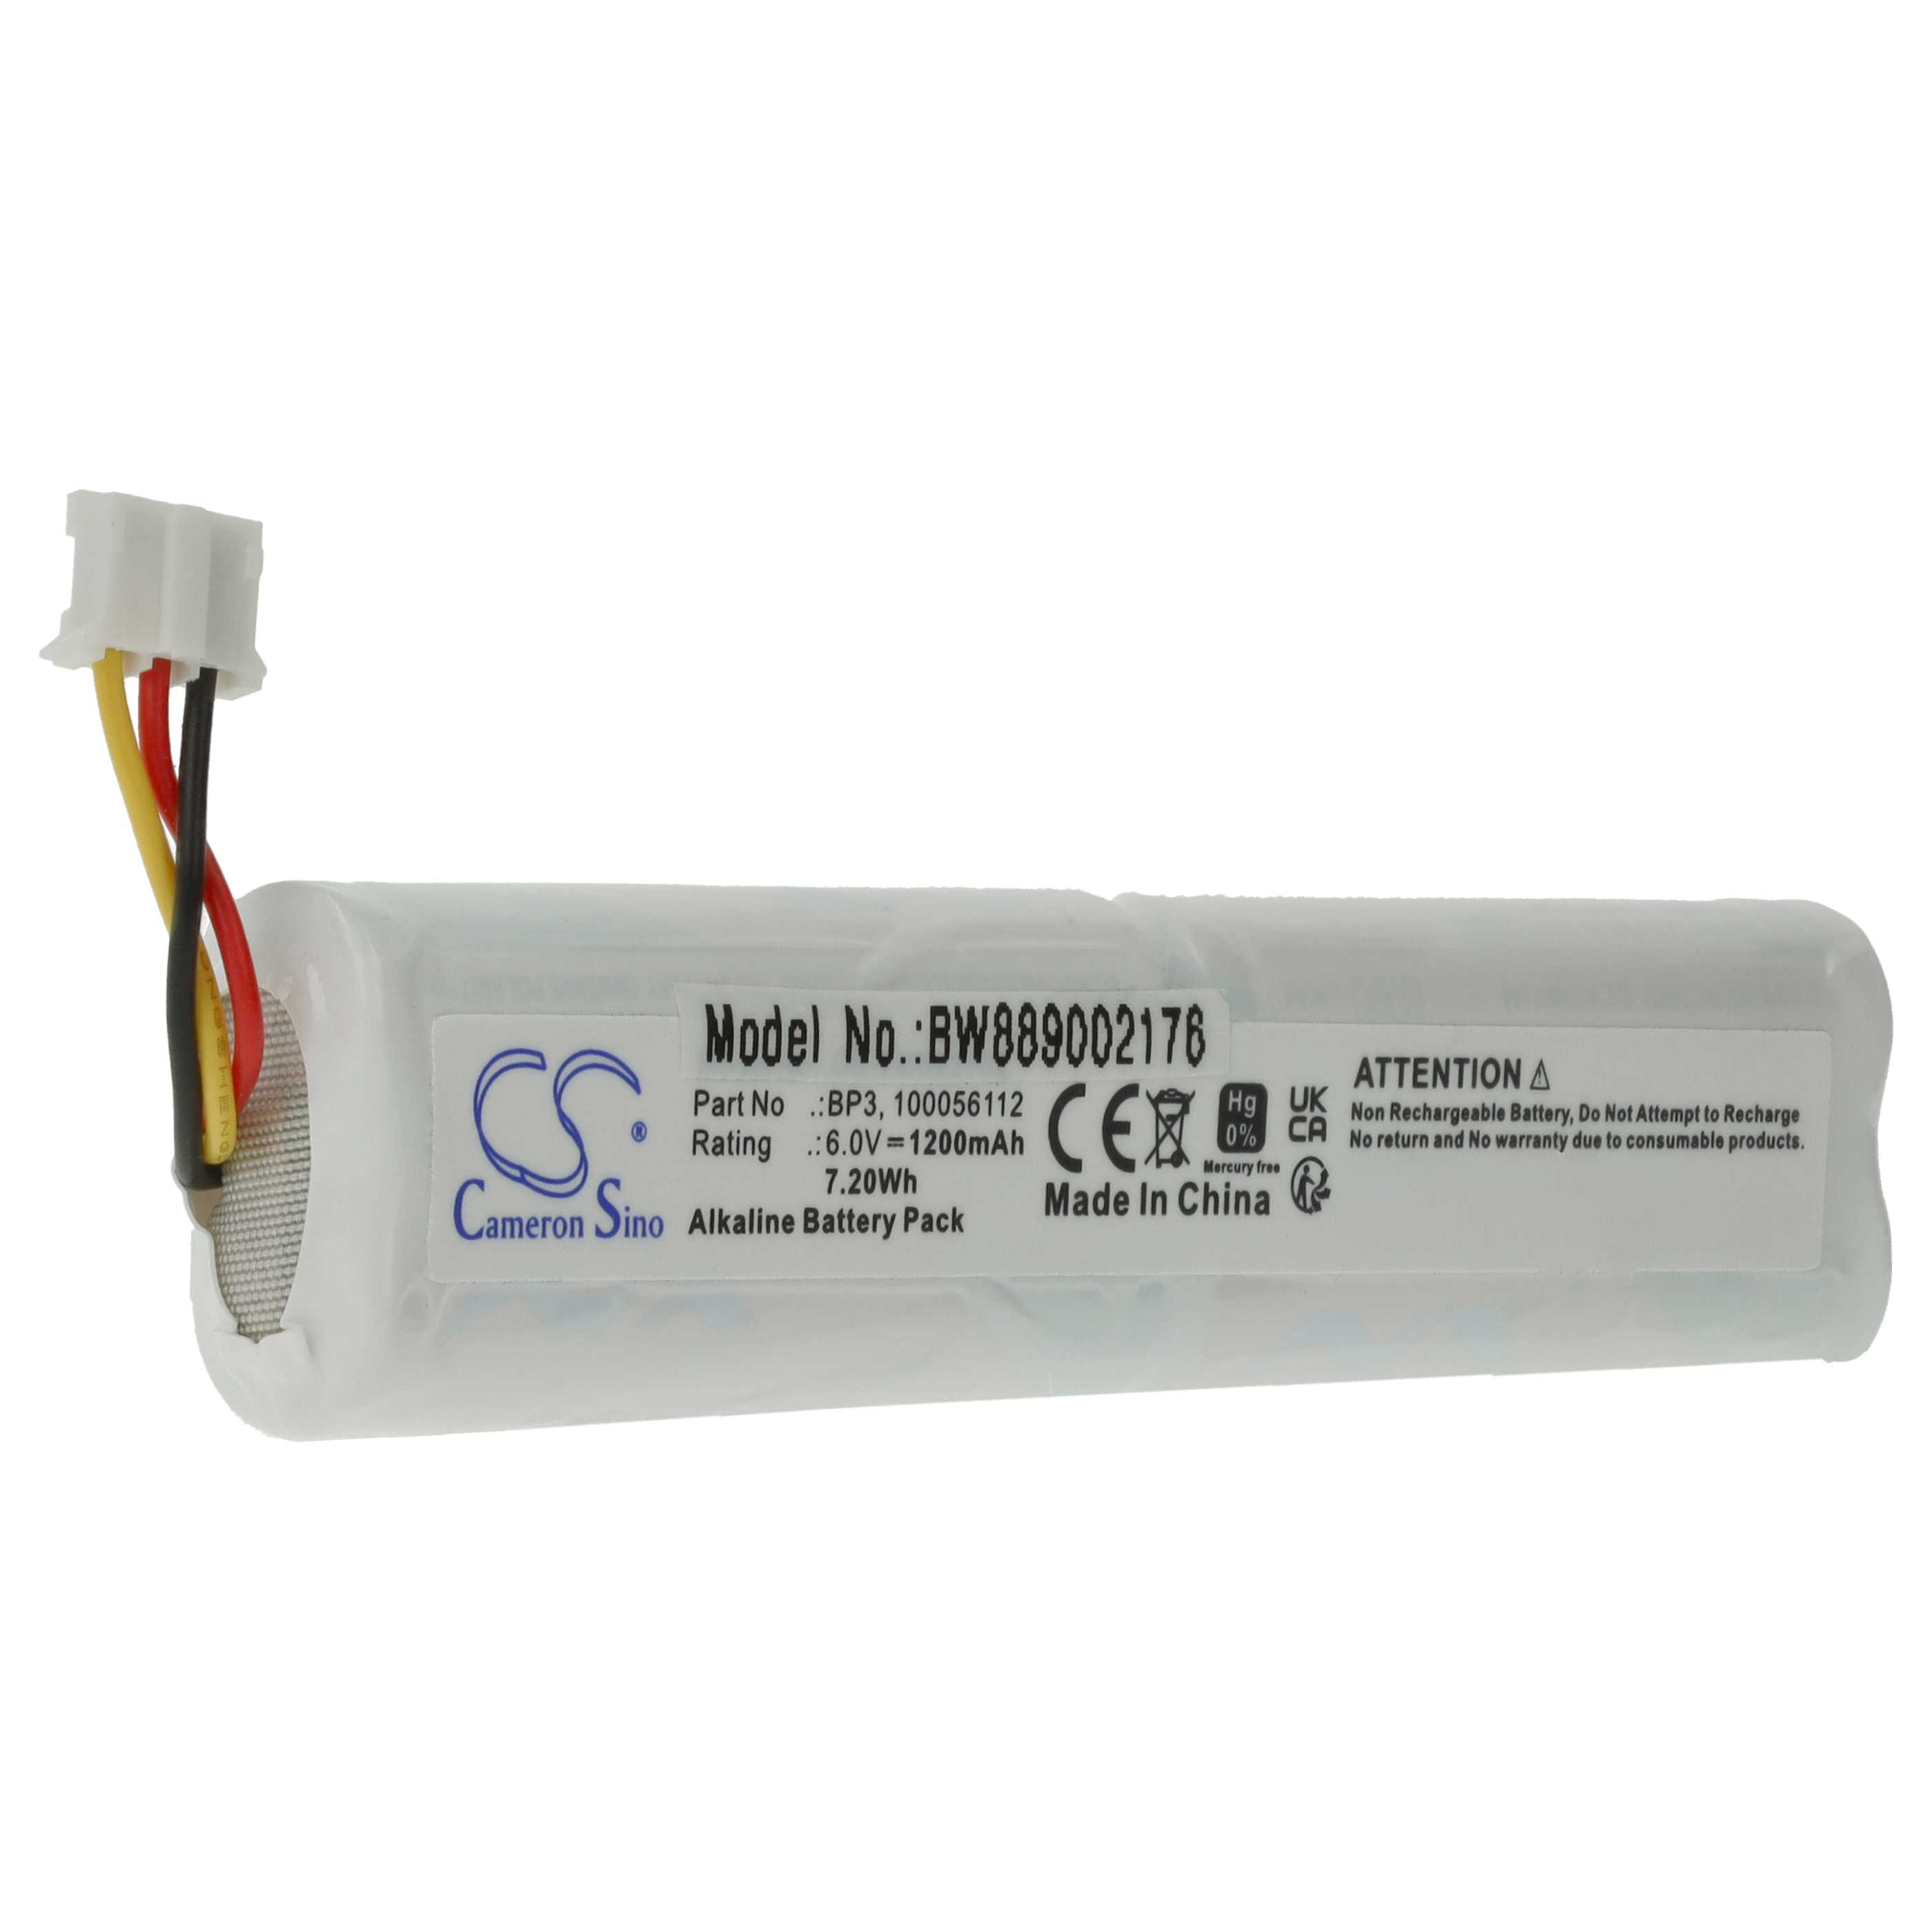 Alarmanlage-Batterie als Ersatz für Telenot BP3, 100056112 - 1200mAh 6V Alkaline